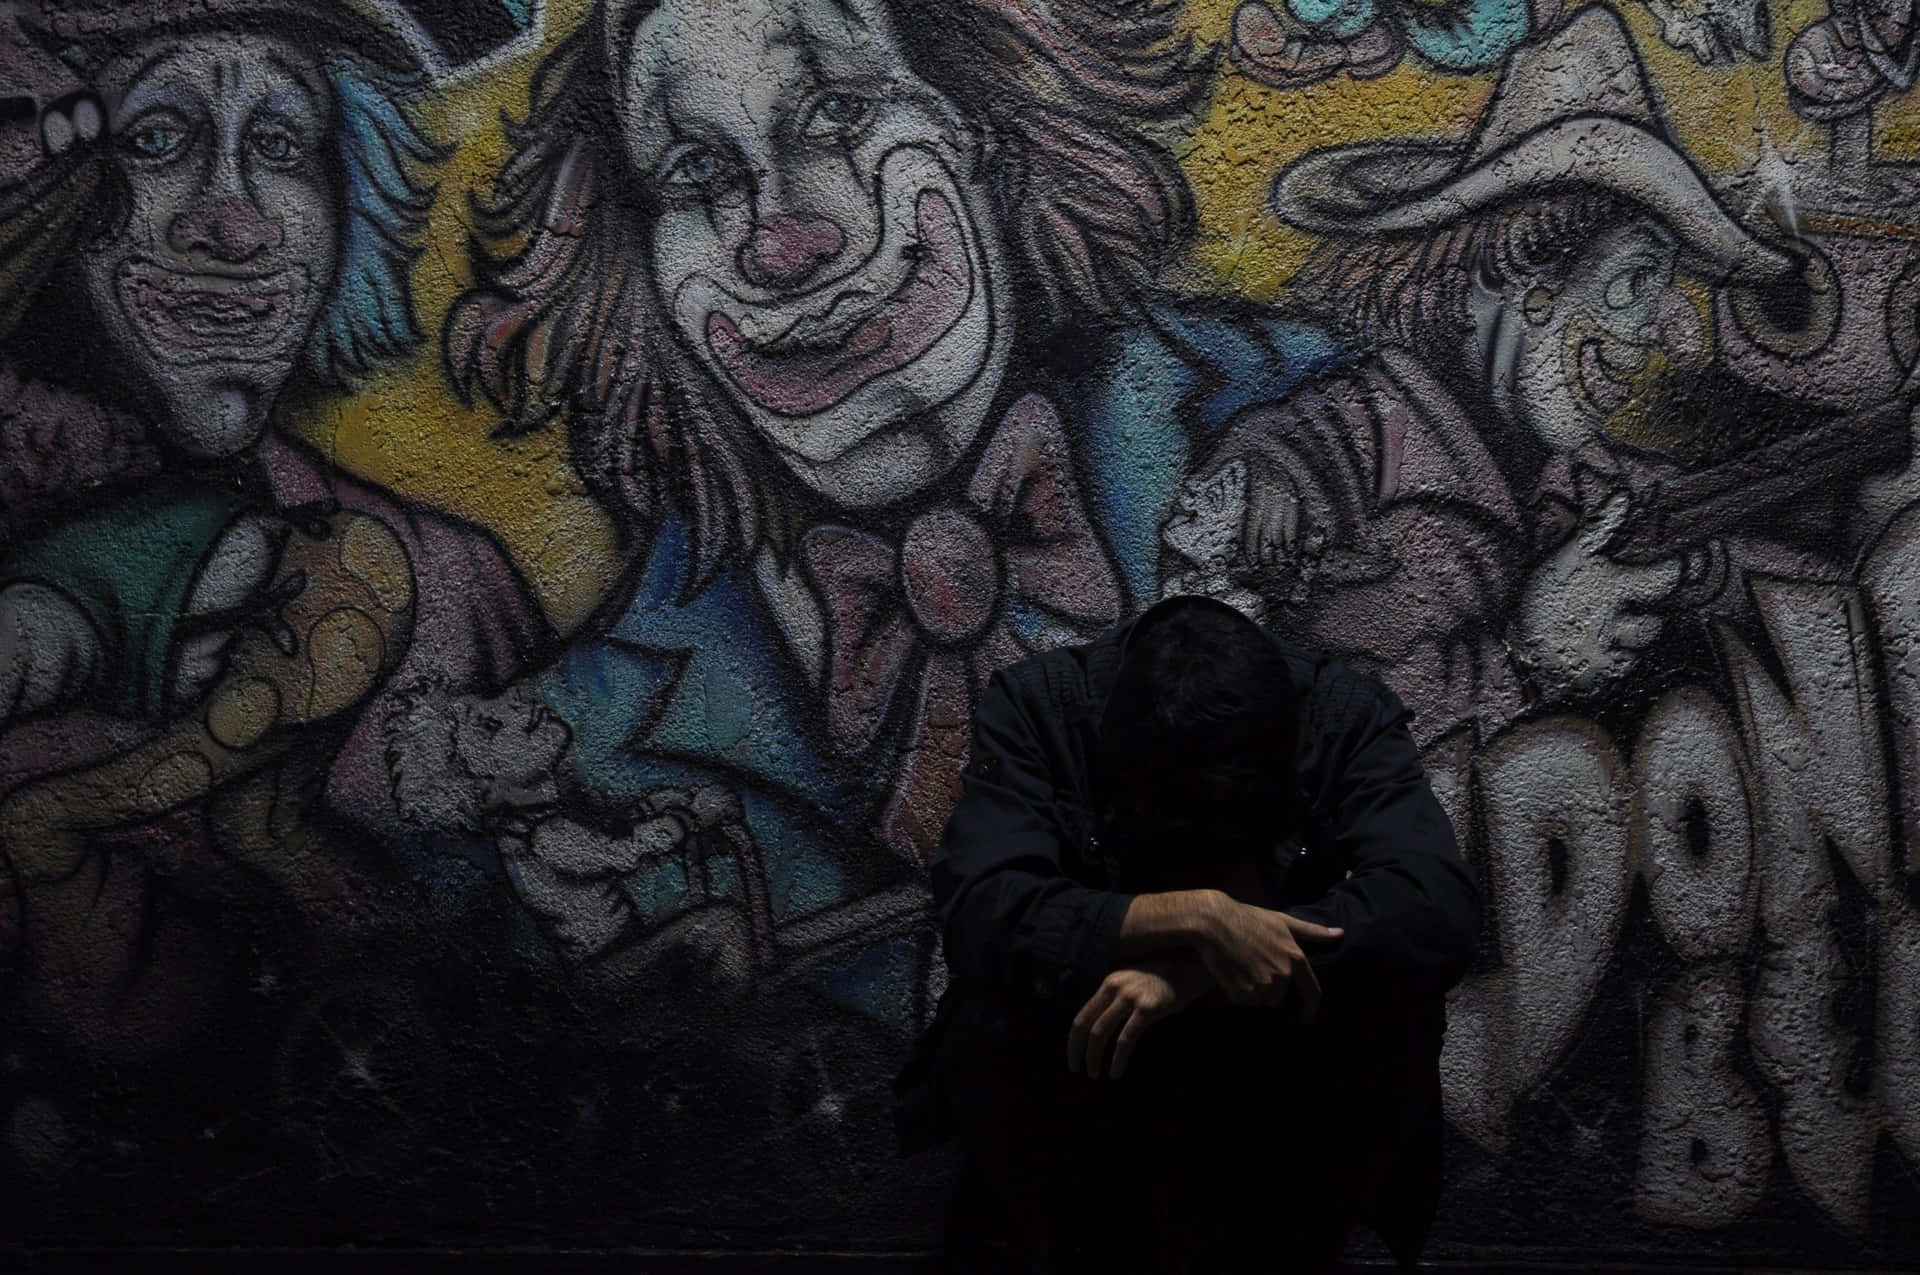 Graffiti Wall Art Of Sad Clowns Wallpaper